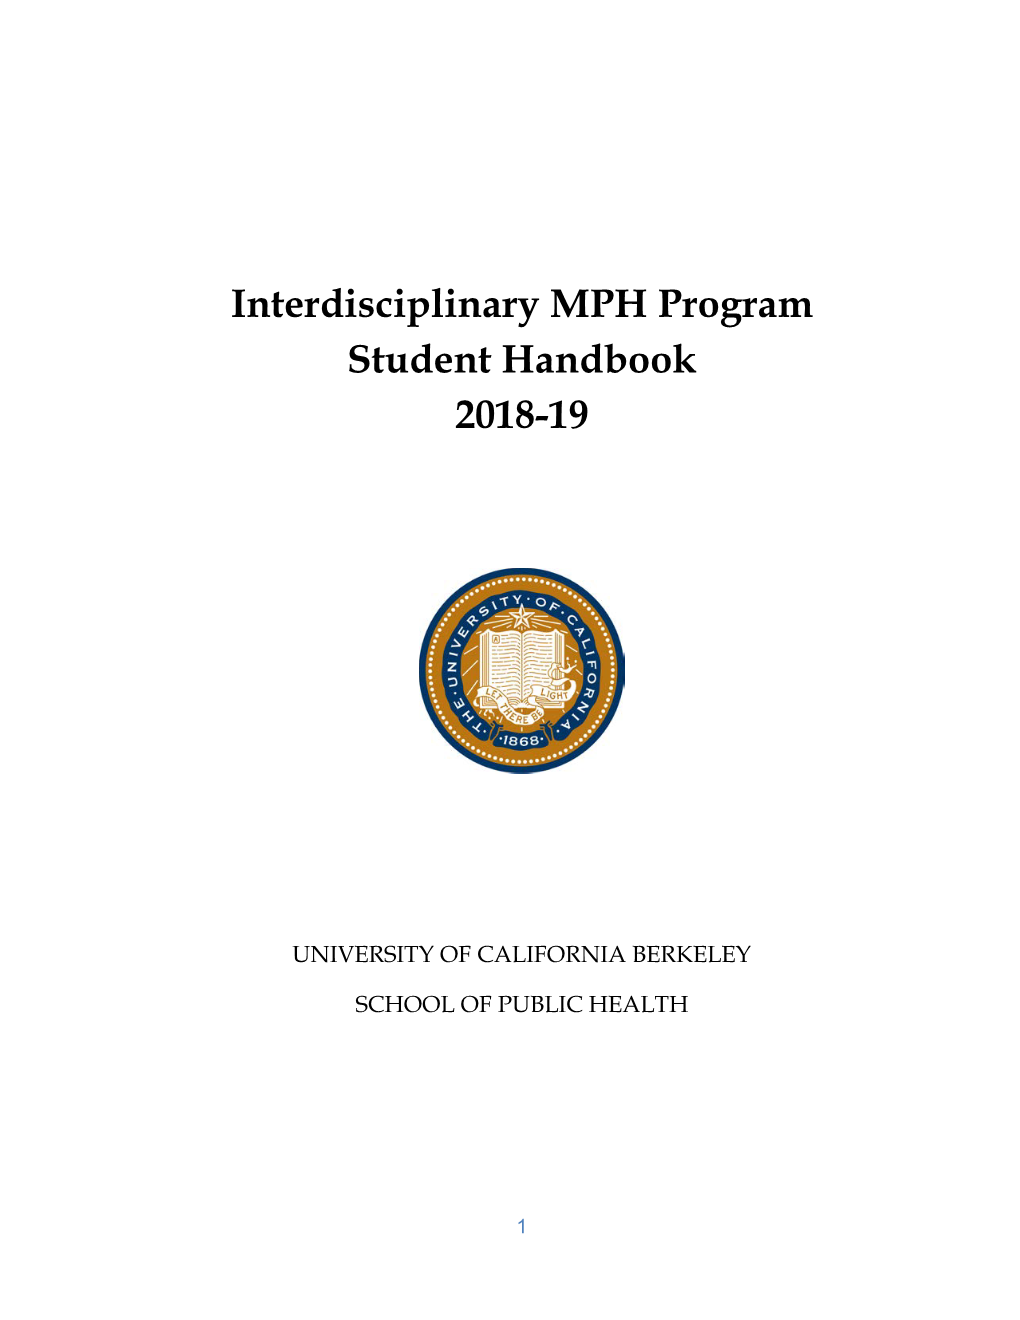 Interdisciplinary MPH Program Student Handbook 2018-19